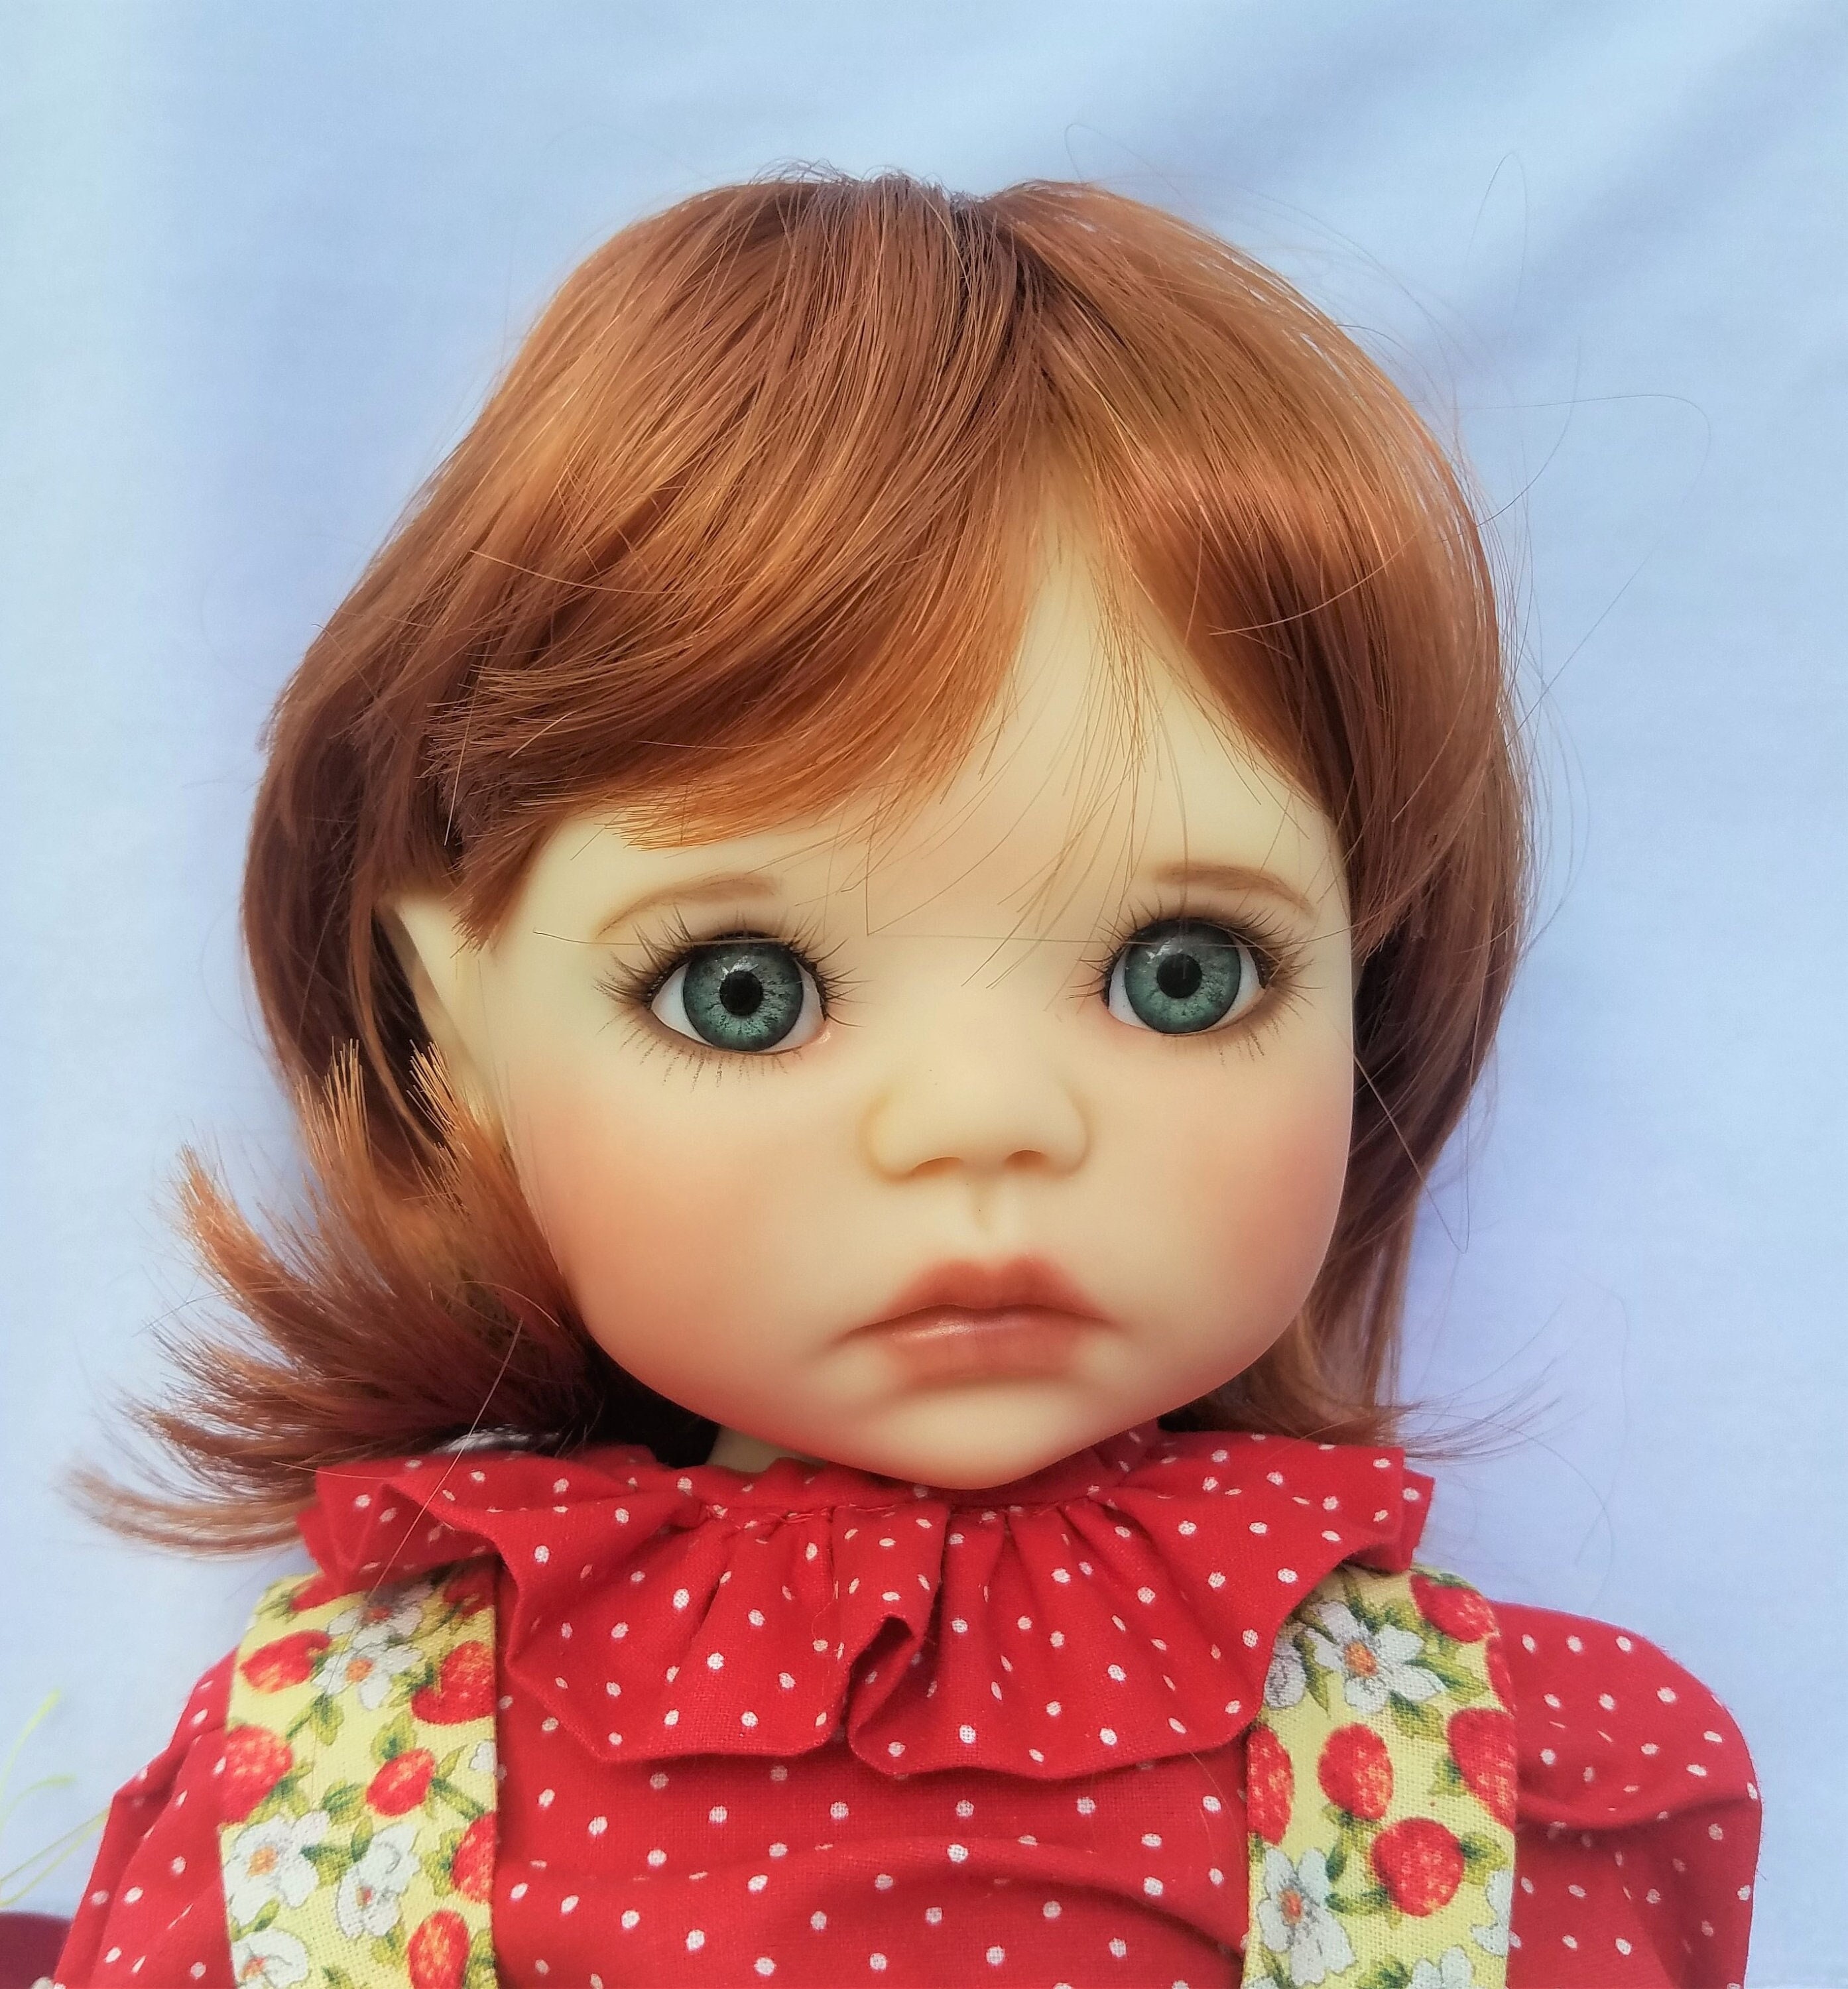 Monique Doll Wig Size 12-13 DORIS in 3 Colors | Etsy